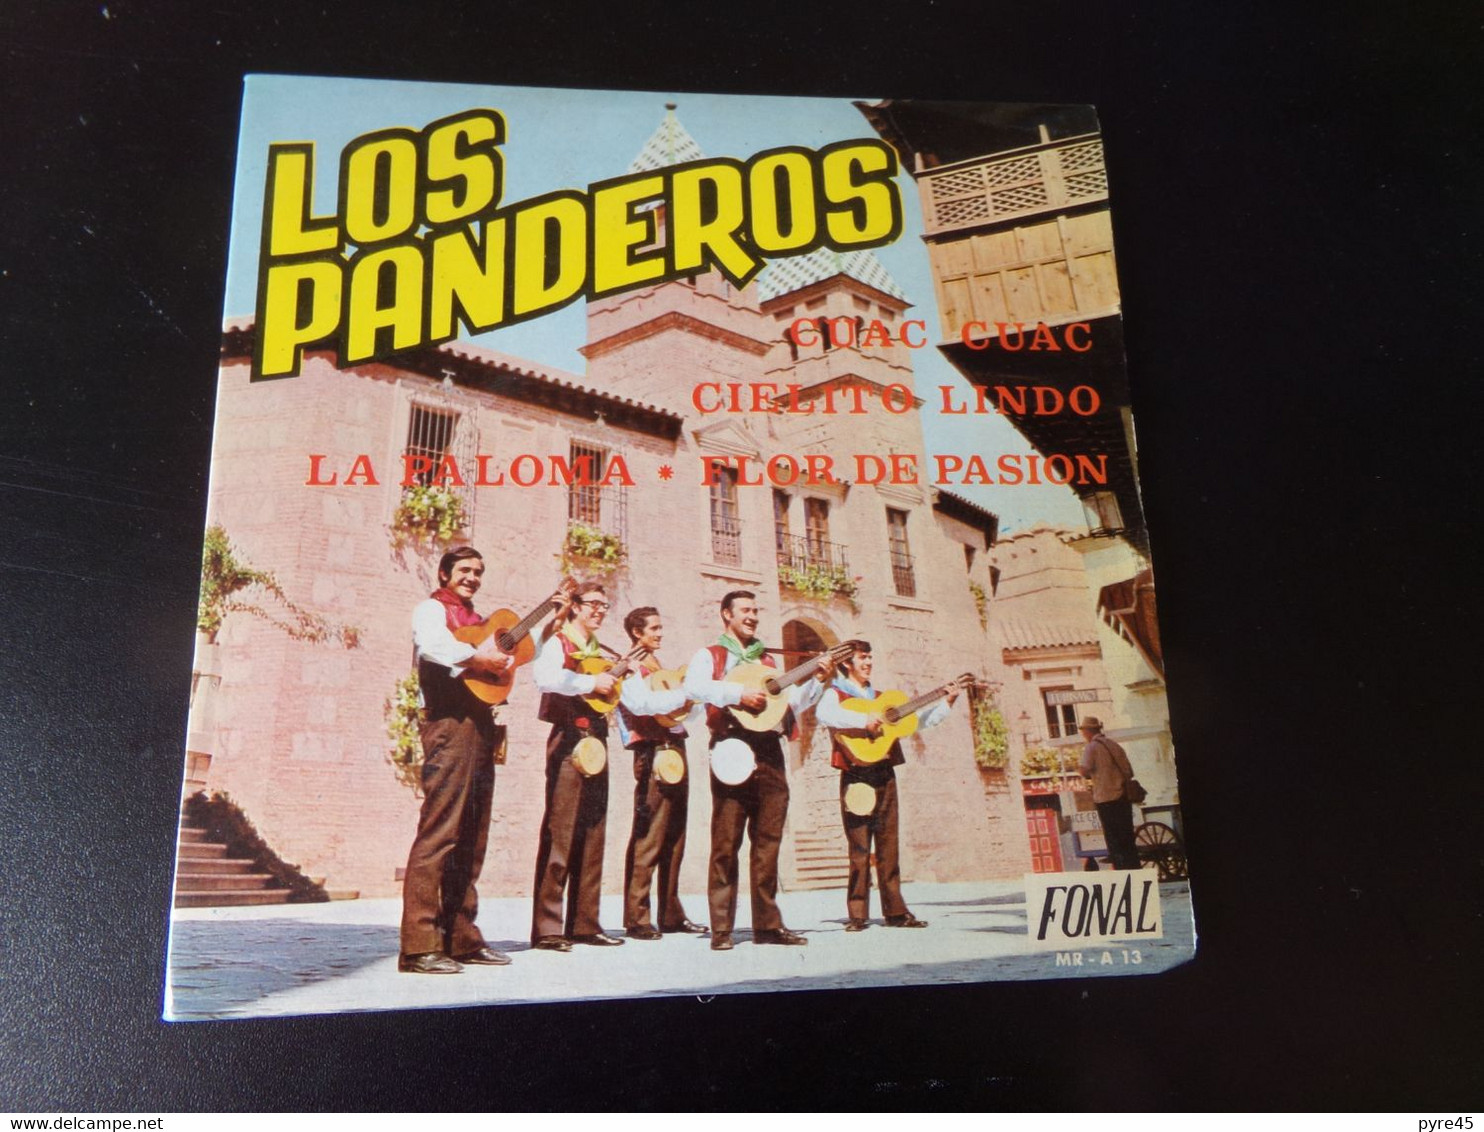 45 T Los Panderos " Cuac Cuac + Cielito Lindo + La Paloma + Flor De Pasion " - Otros - Canción Española